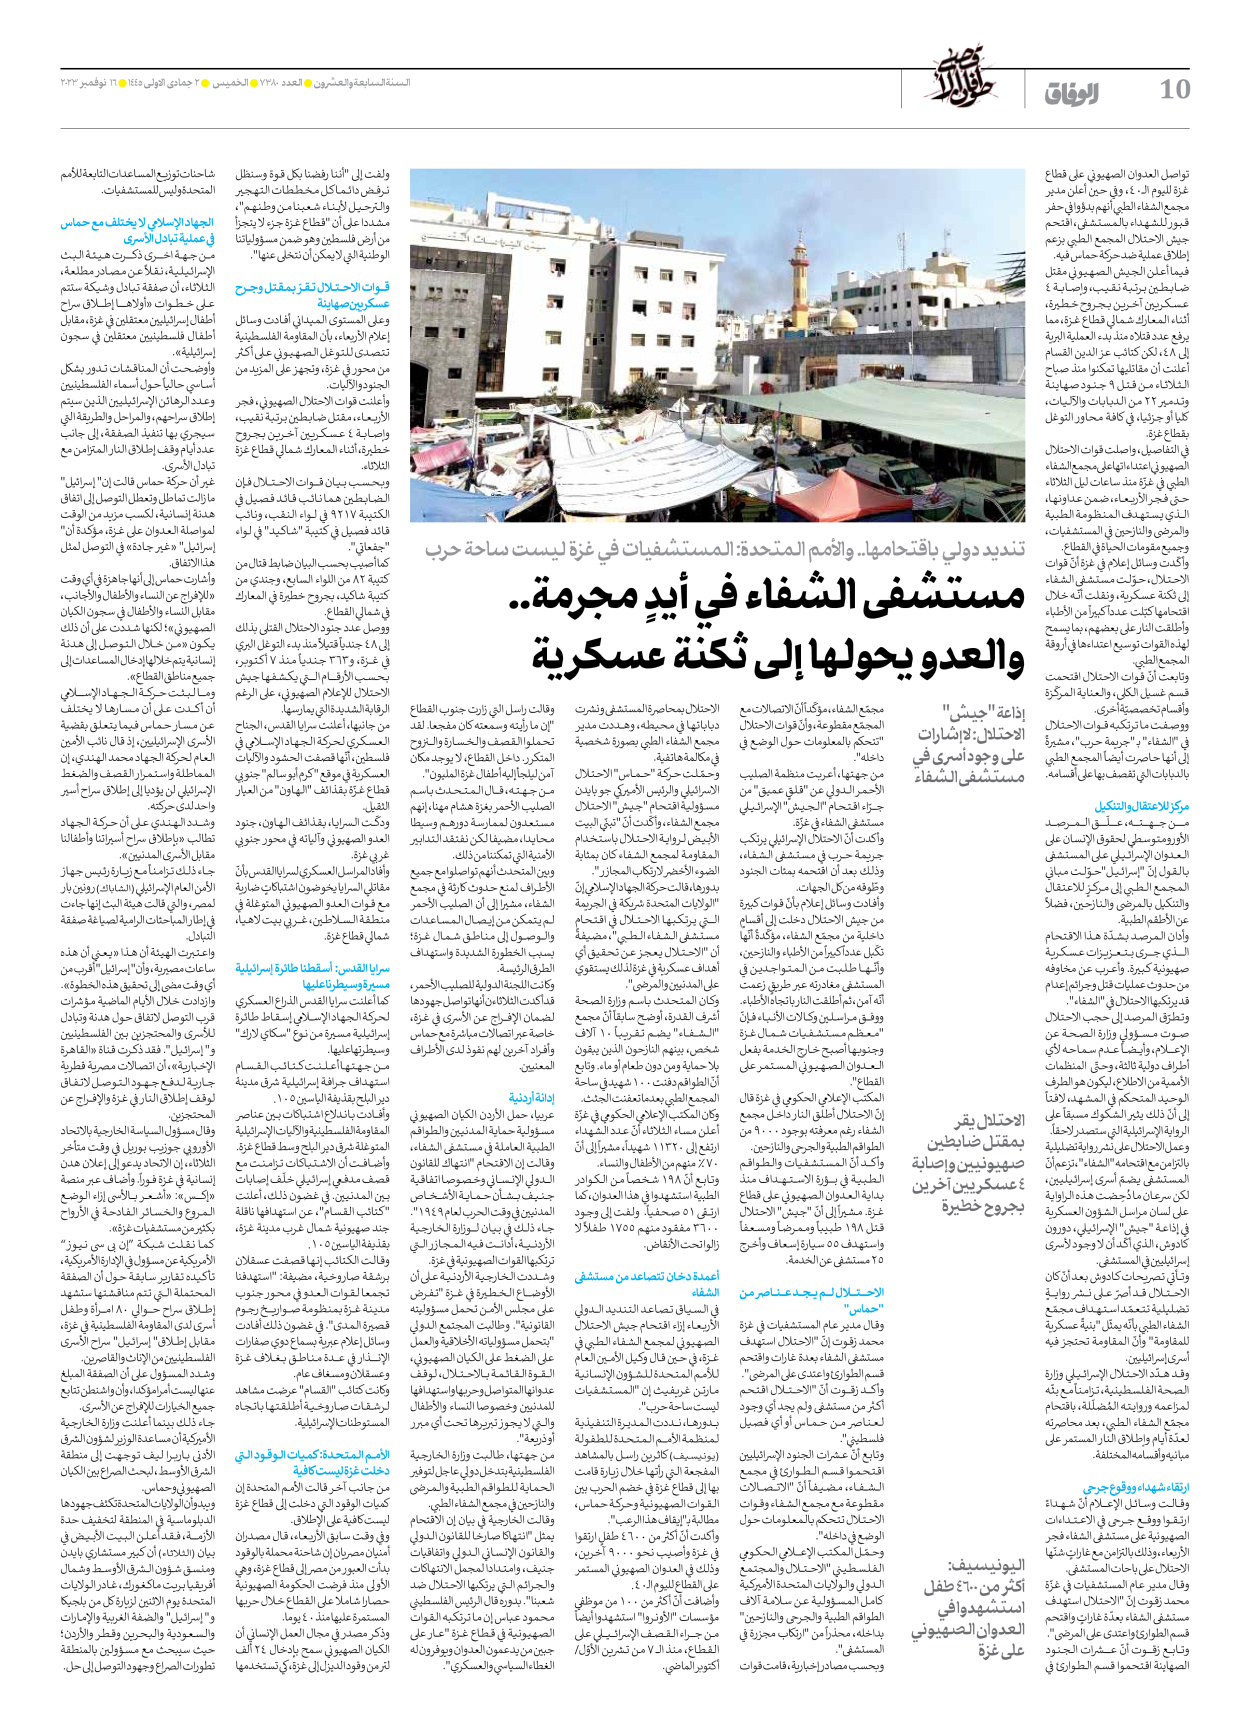 صحیفة ایران الدولیة الوفاق - العدد سبعة آلاف وثلاثمائة وثمانون - ١٦ نوفمبر ٢٠٢٣ - الصفحة ۱۰